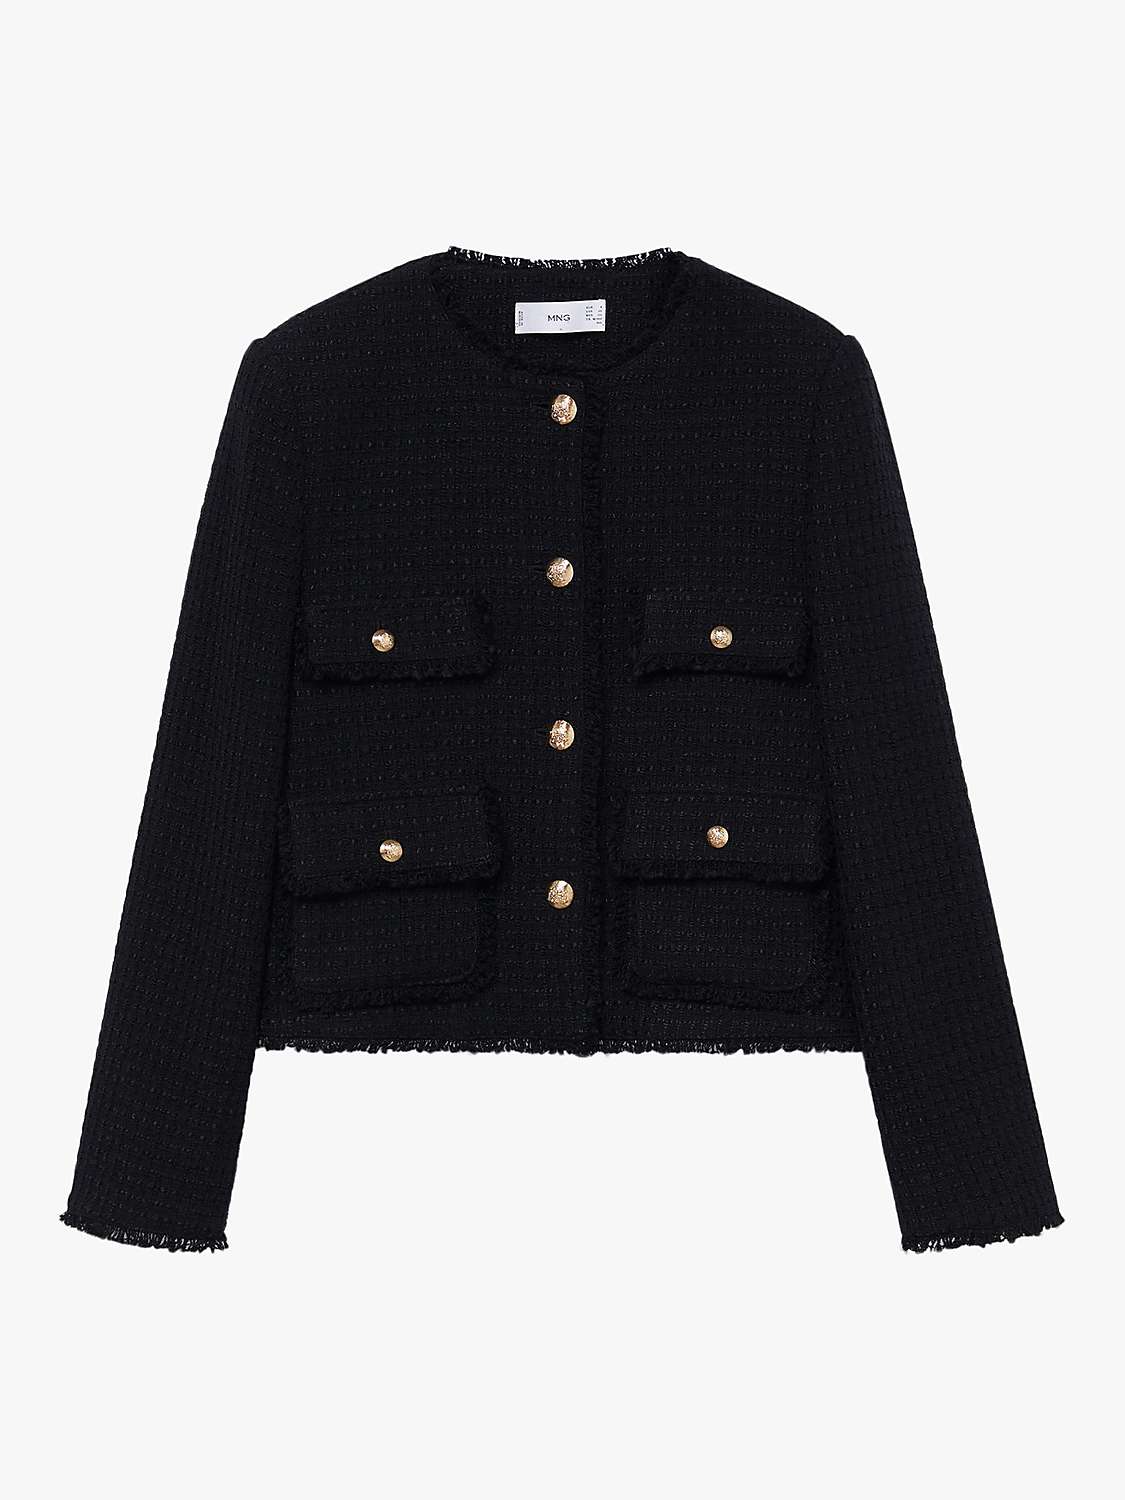 Mango Button Front Tweed Jacket, Black at John Lewis & Partners